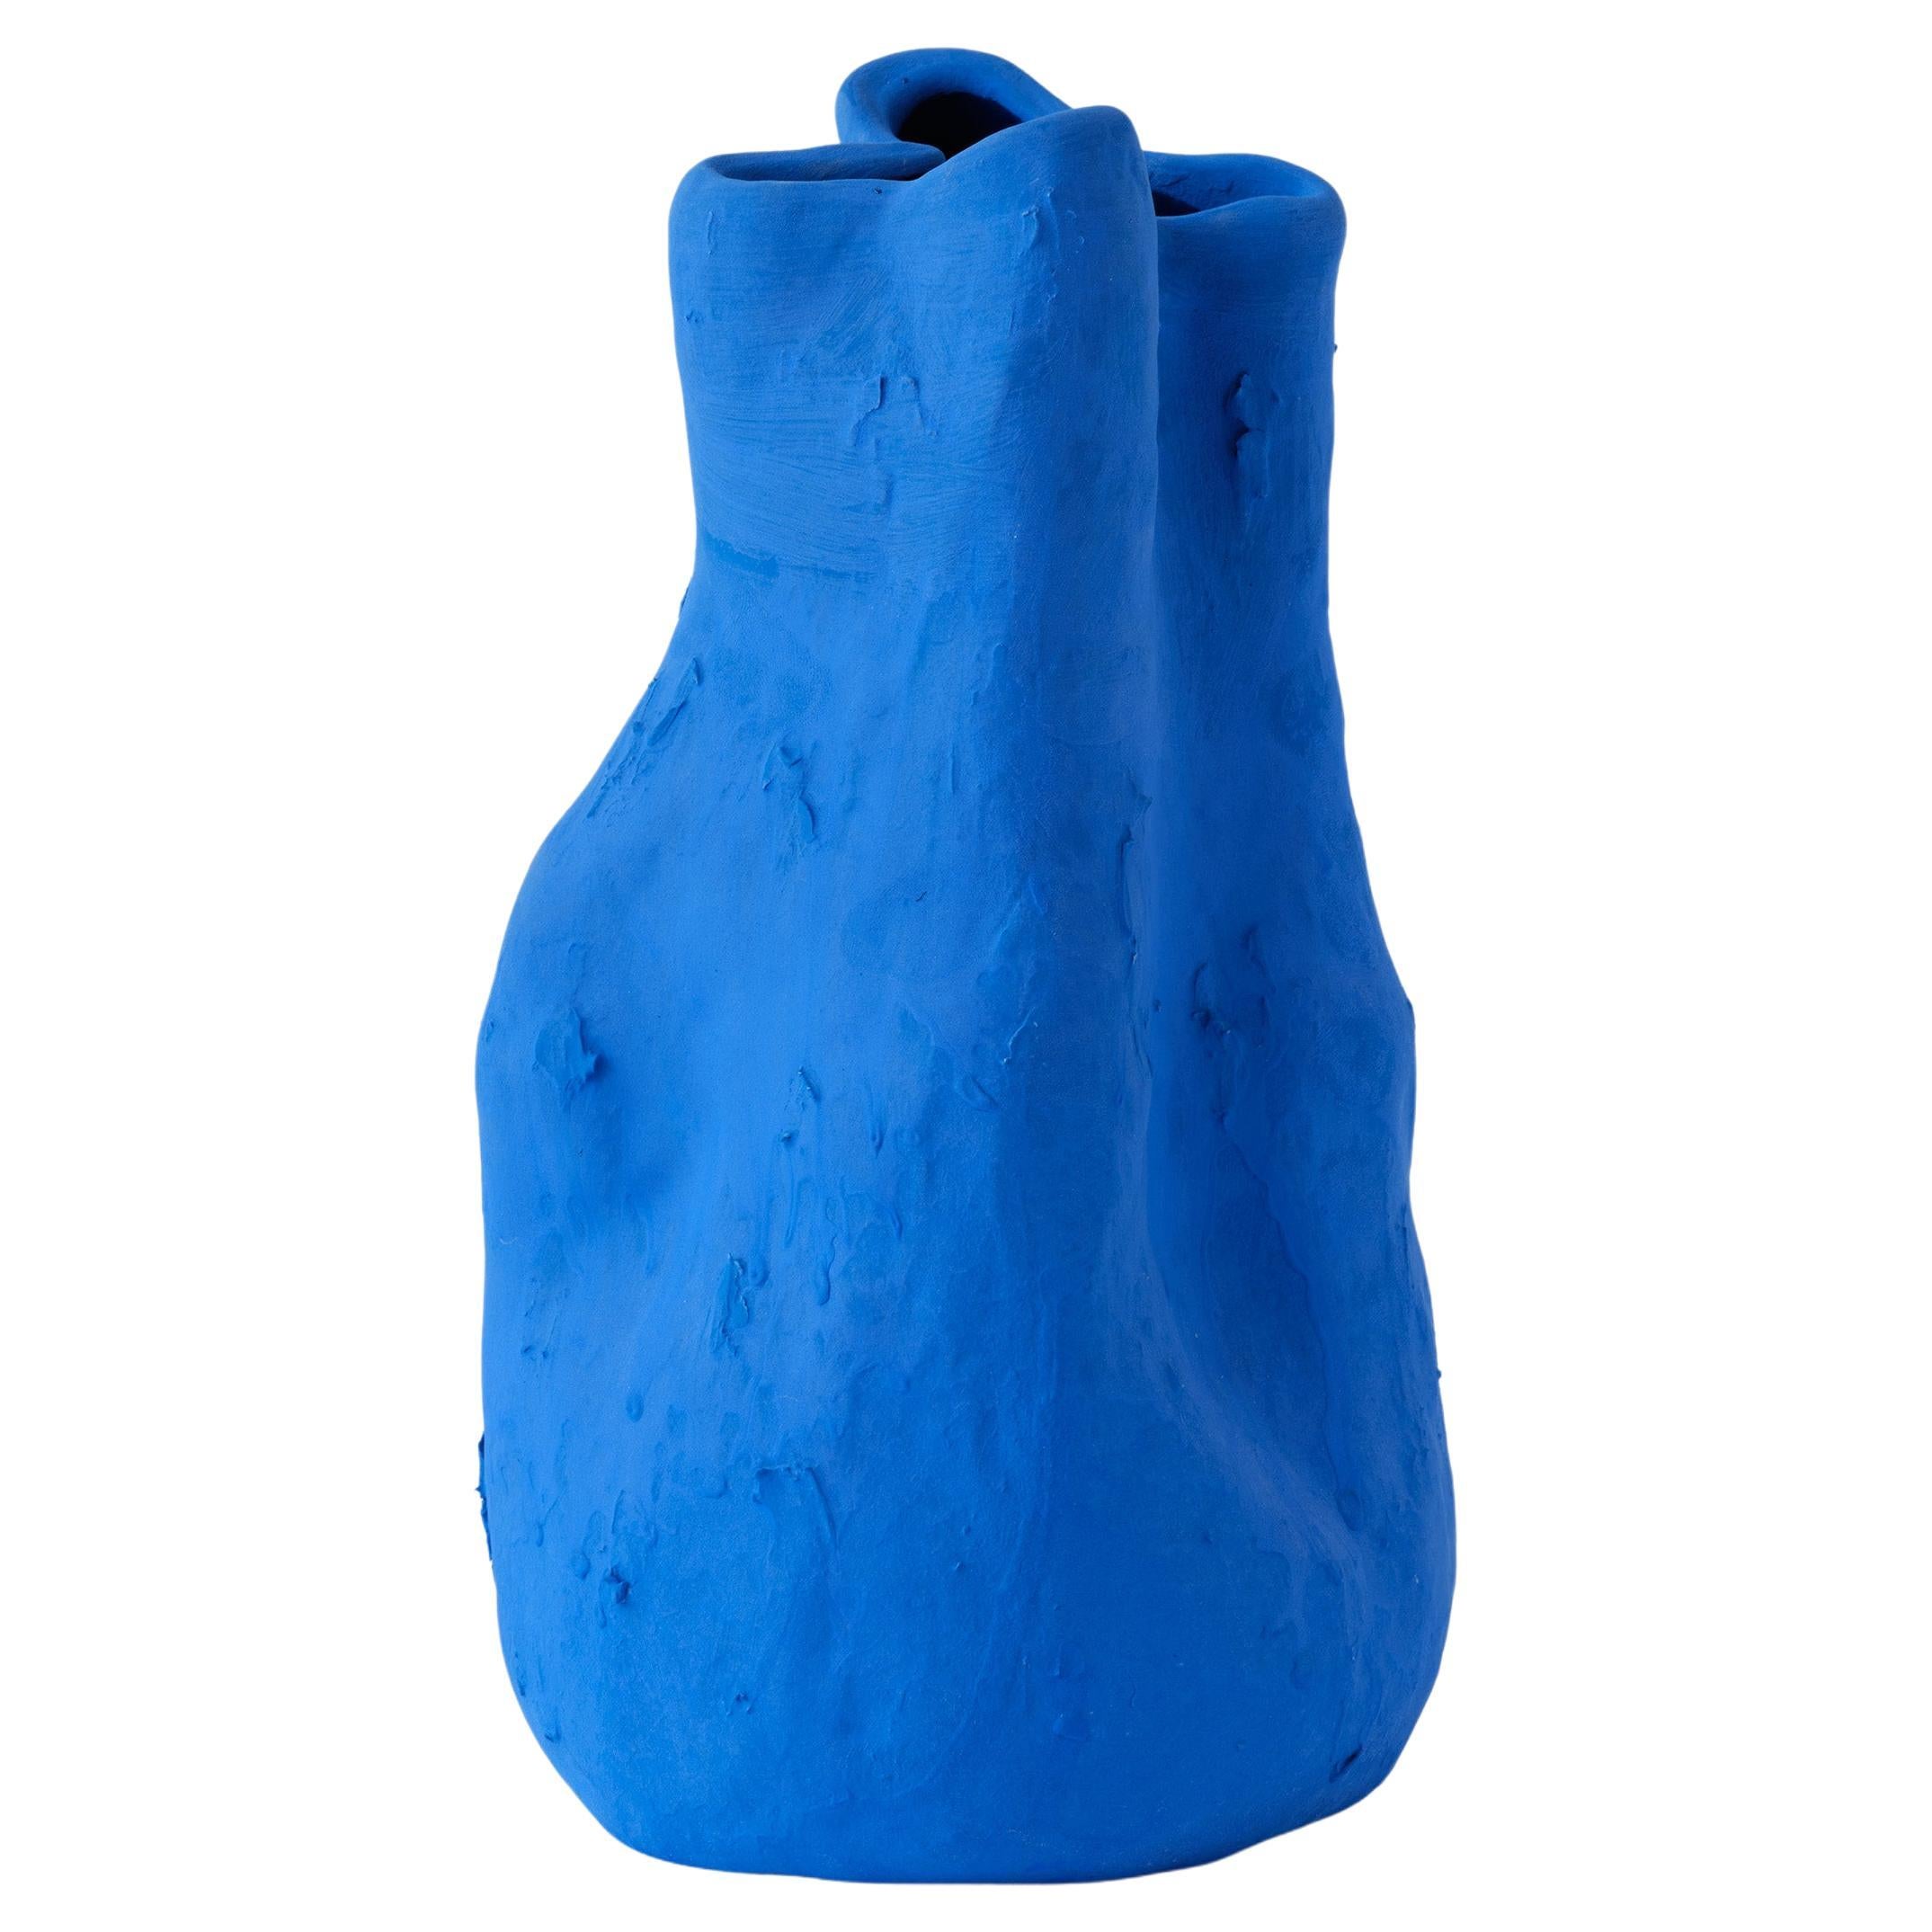 Vase de Géorgie en porcelaine bleu mat fabriqué à la main